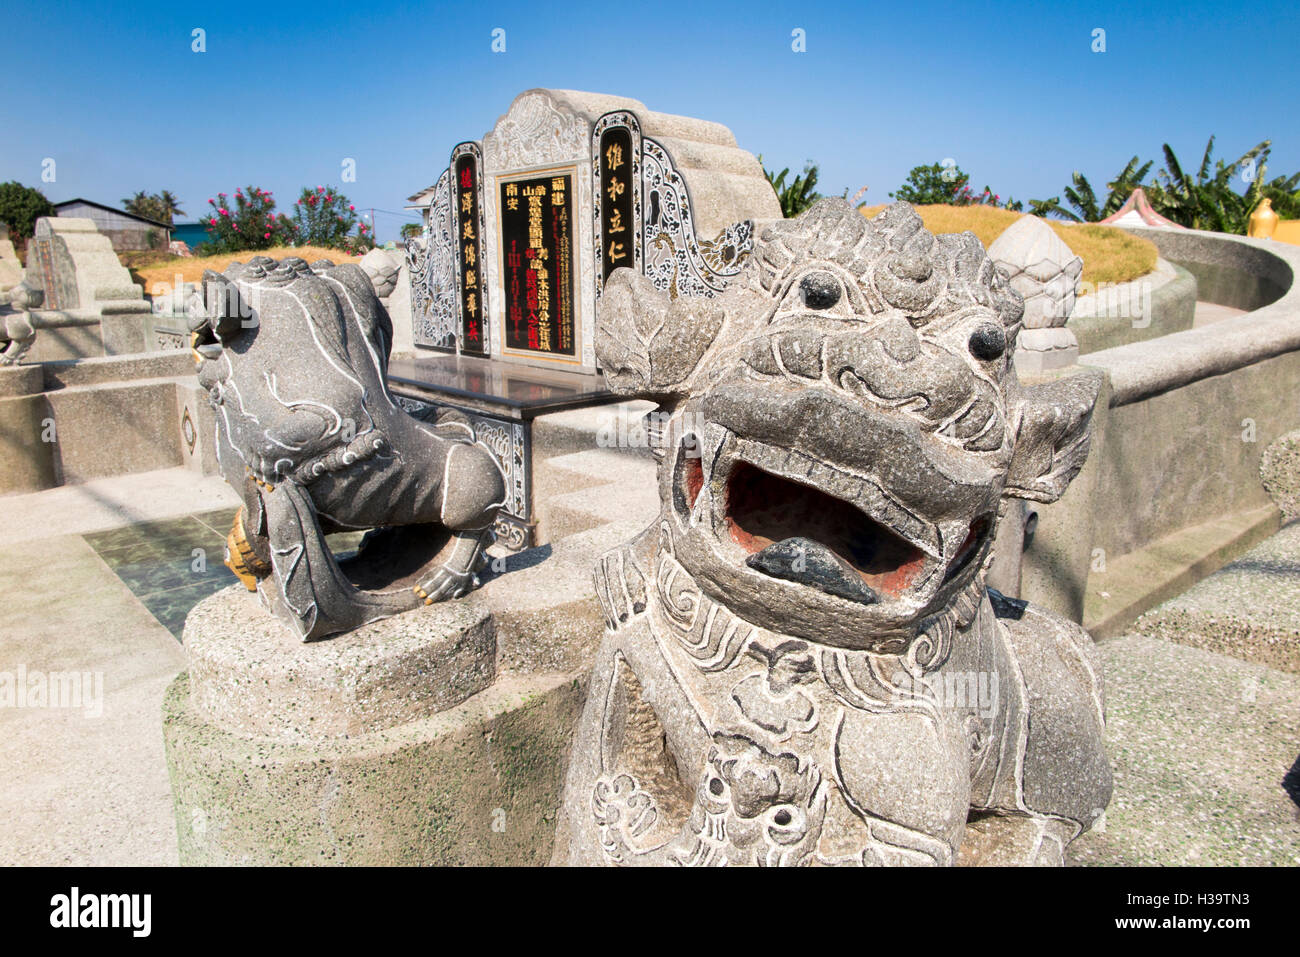 Indonesien, Lombok, Ampenan, chinesischen Friedhof, steinerne Löwen bewachen traditionelle Familie Gräber geschnitzt Stockfoto